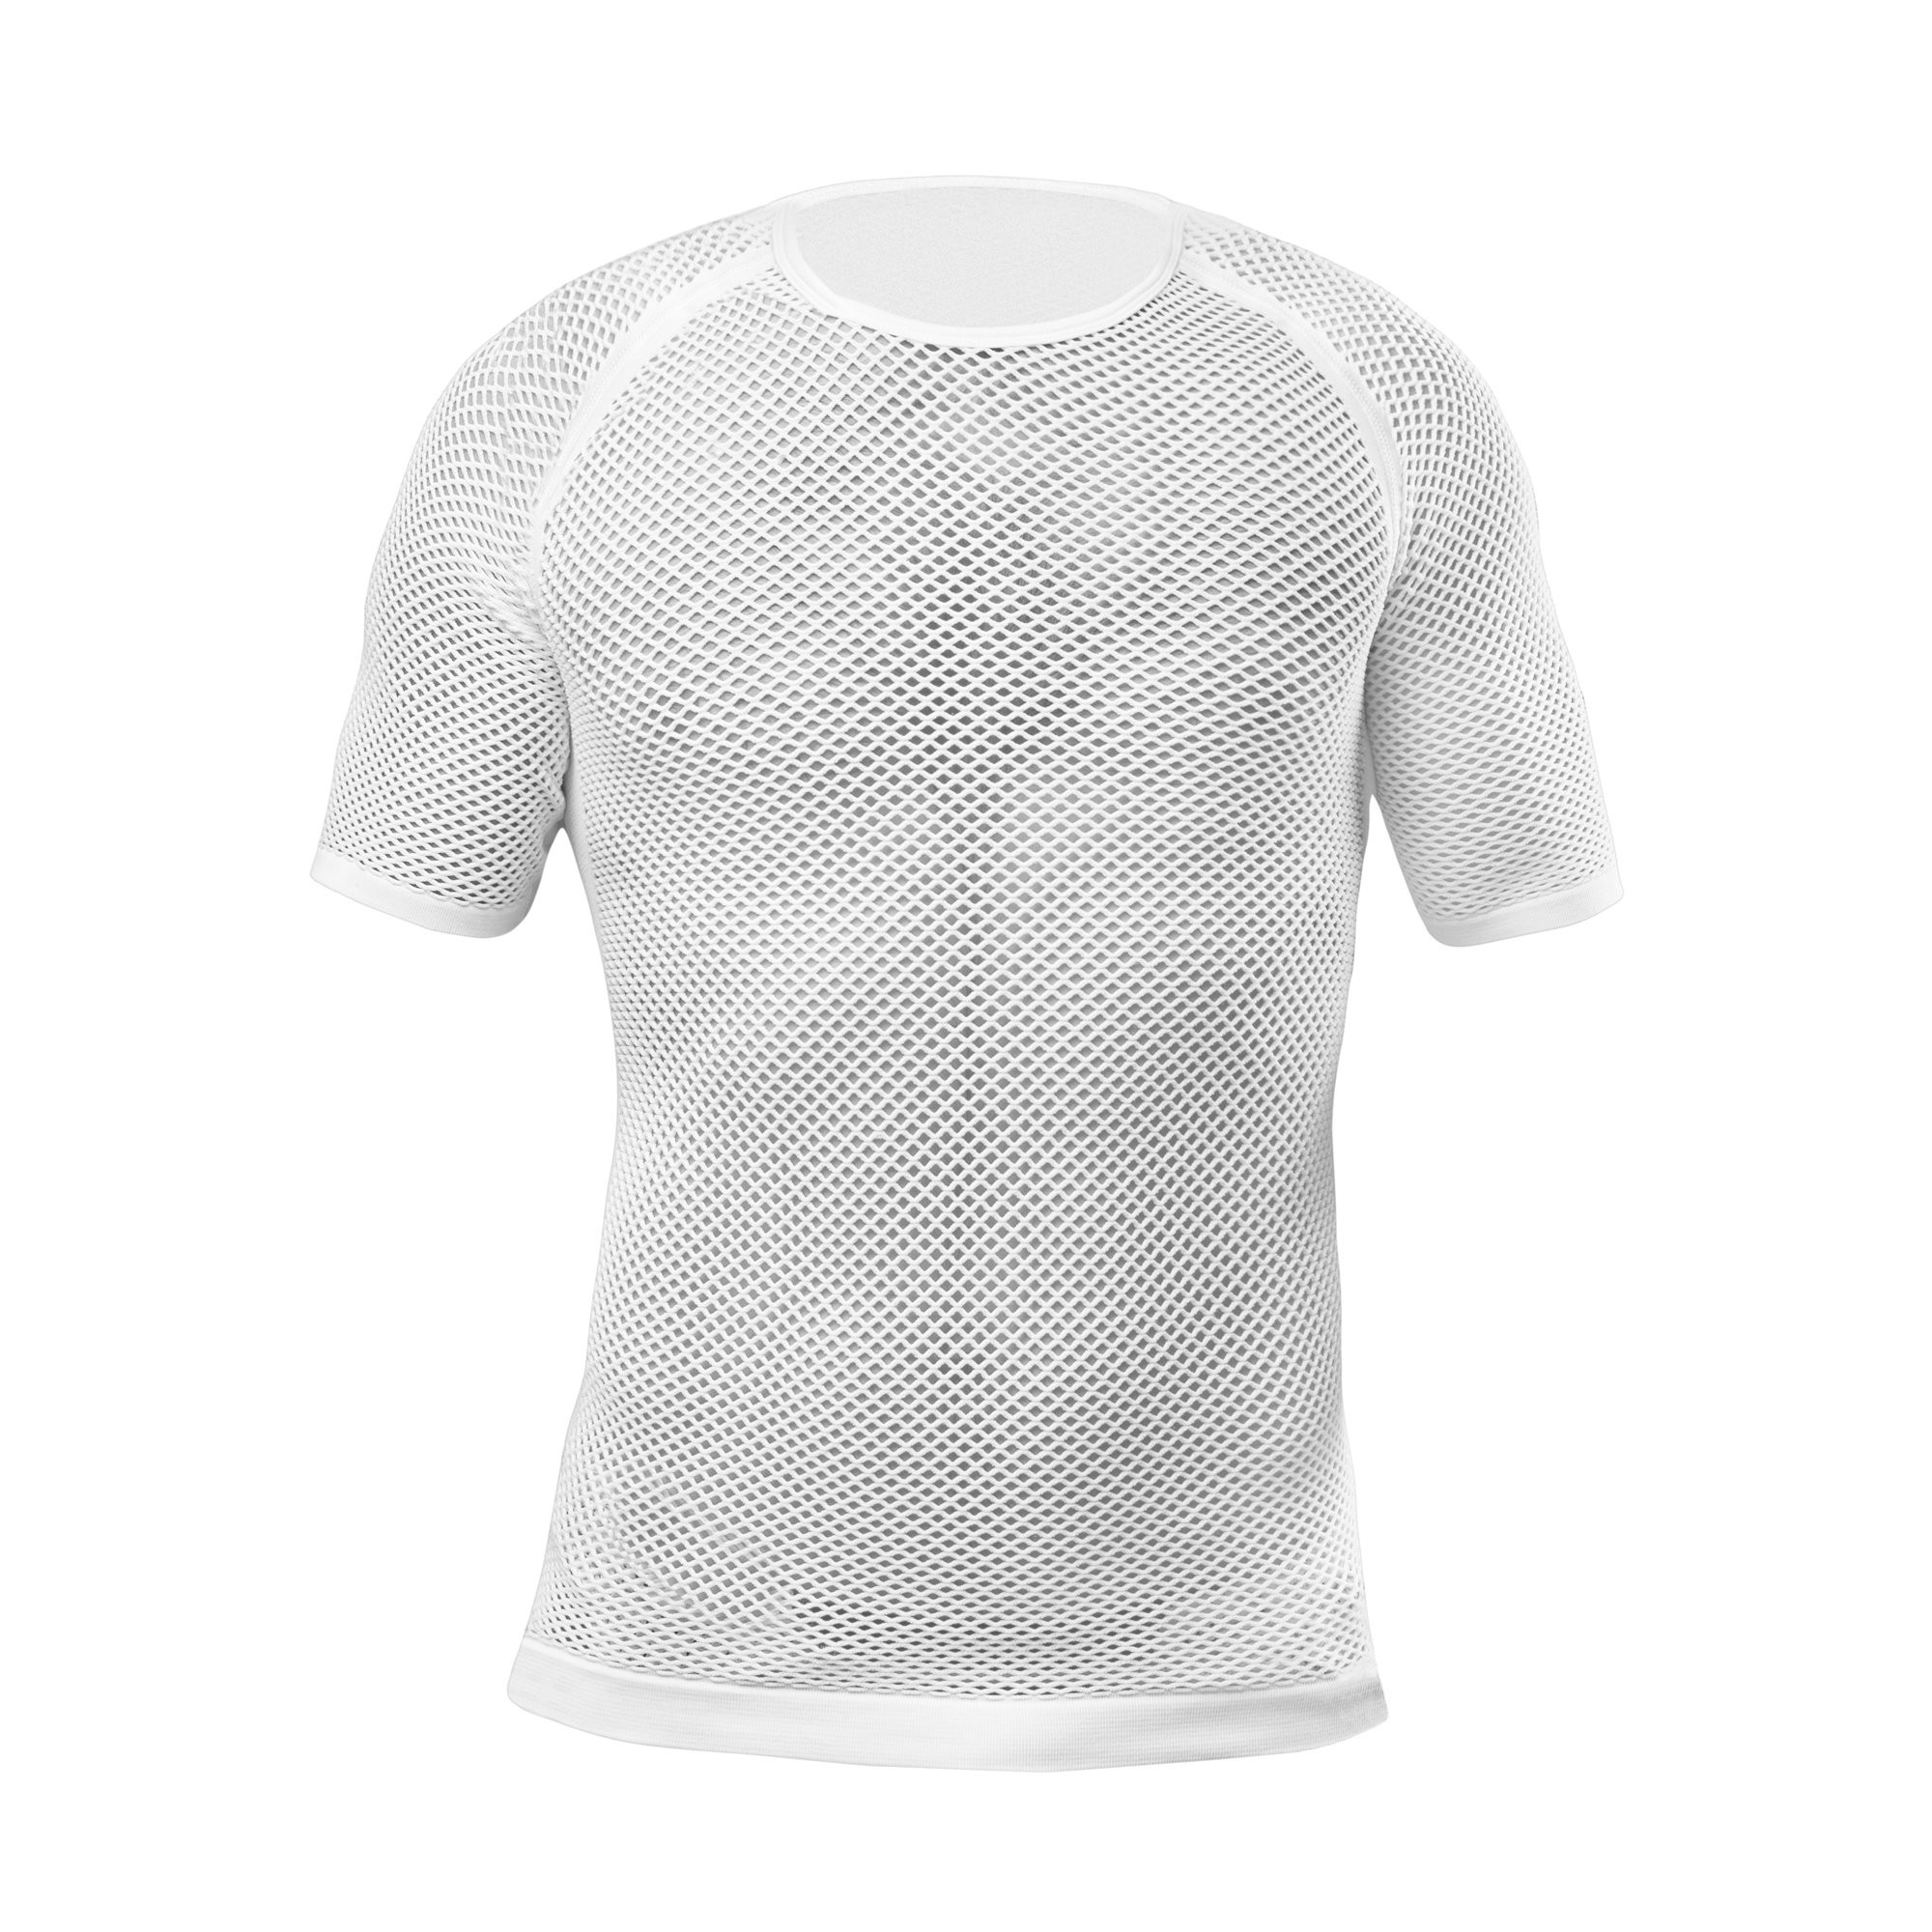 GripGrab 3-season sous-vêtement manches courtes blanc